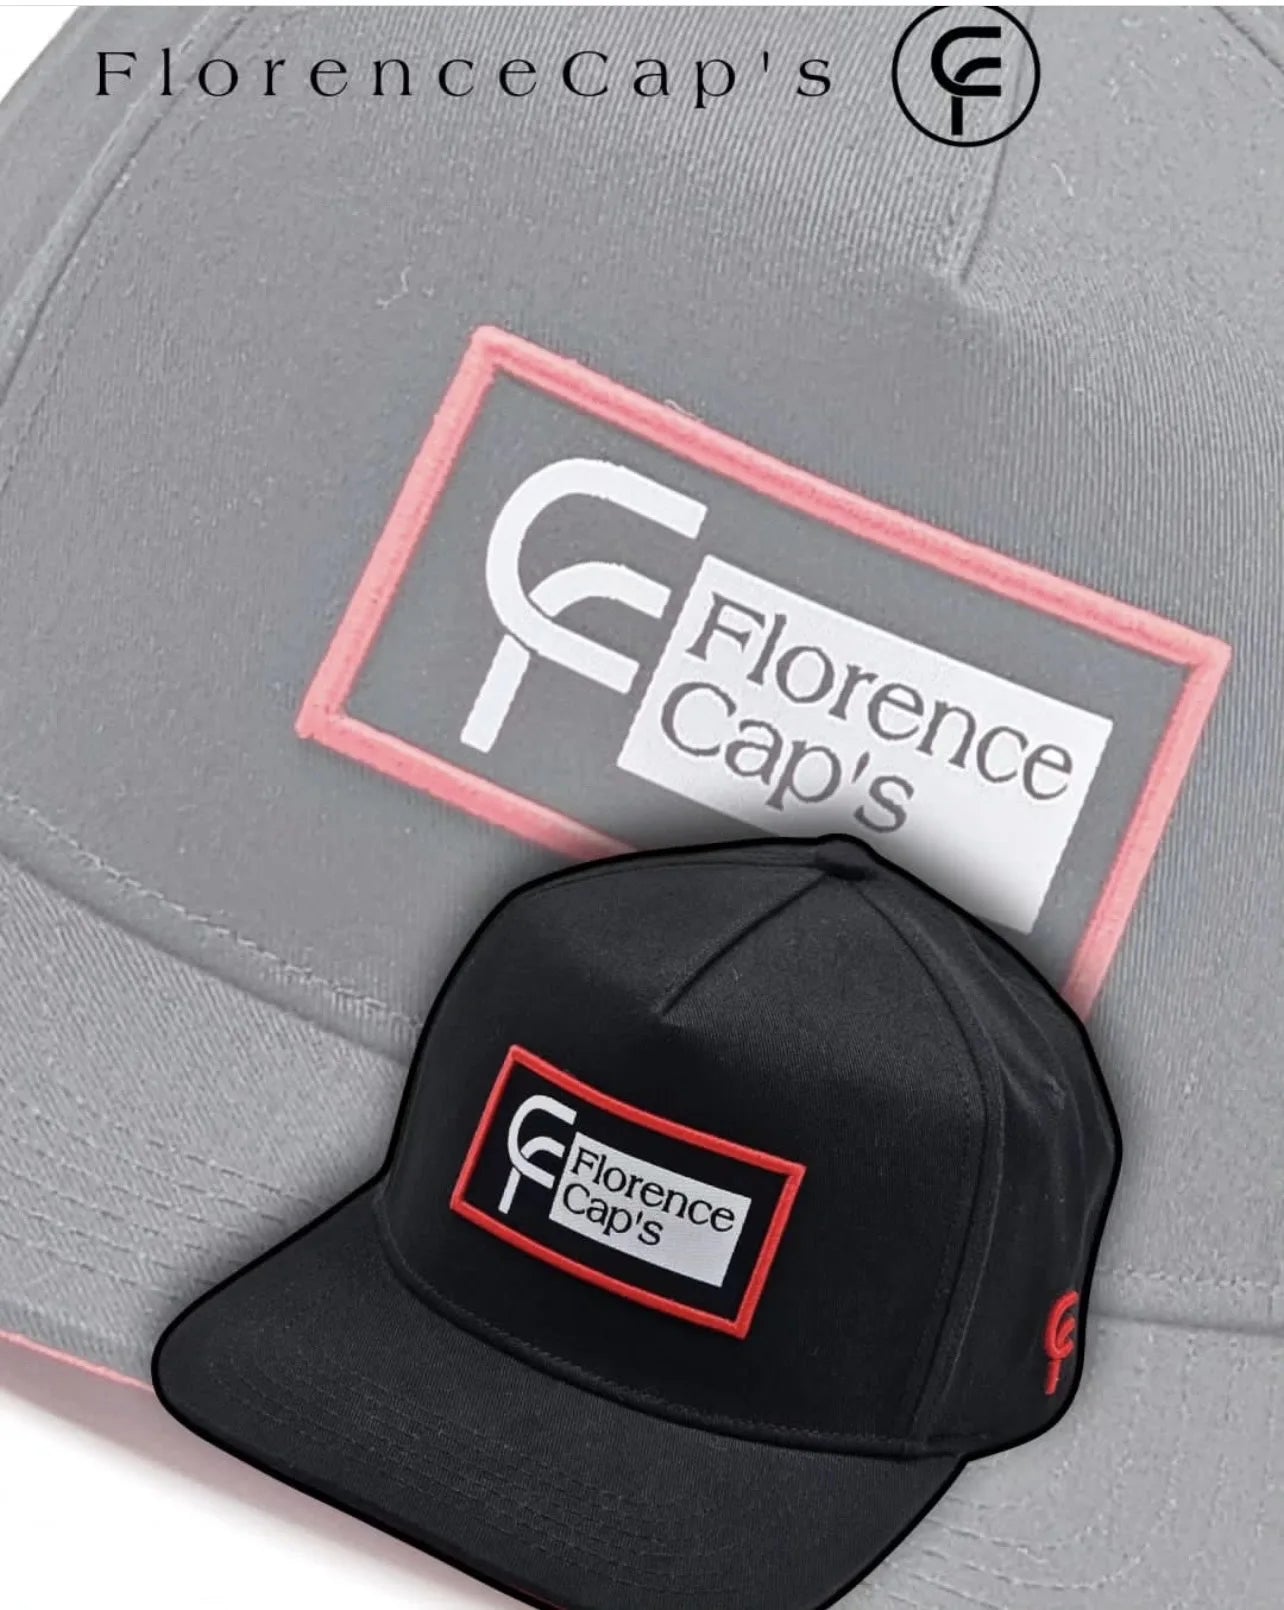 A FC Florence Cap’s Original logo